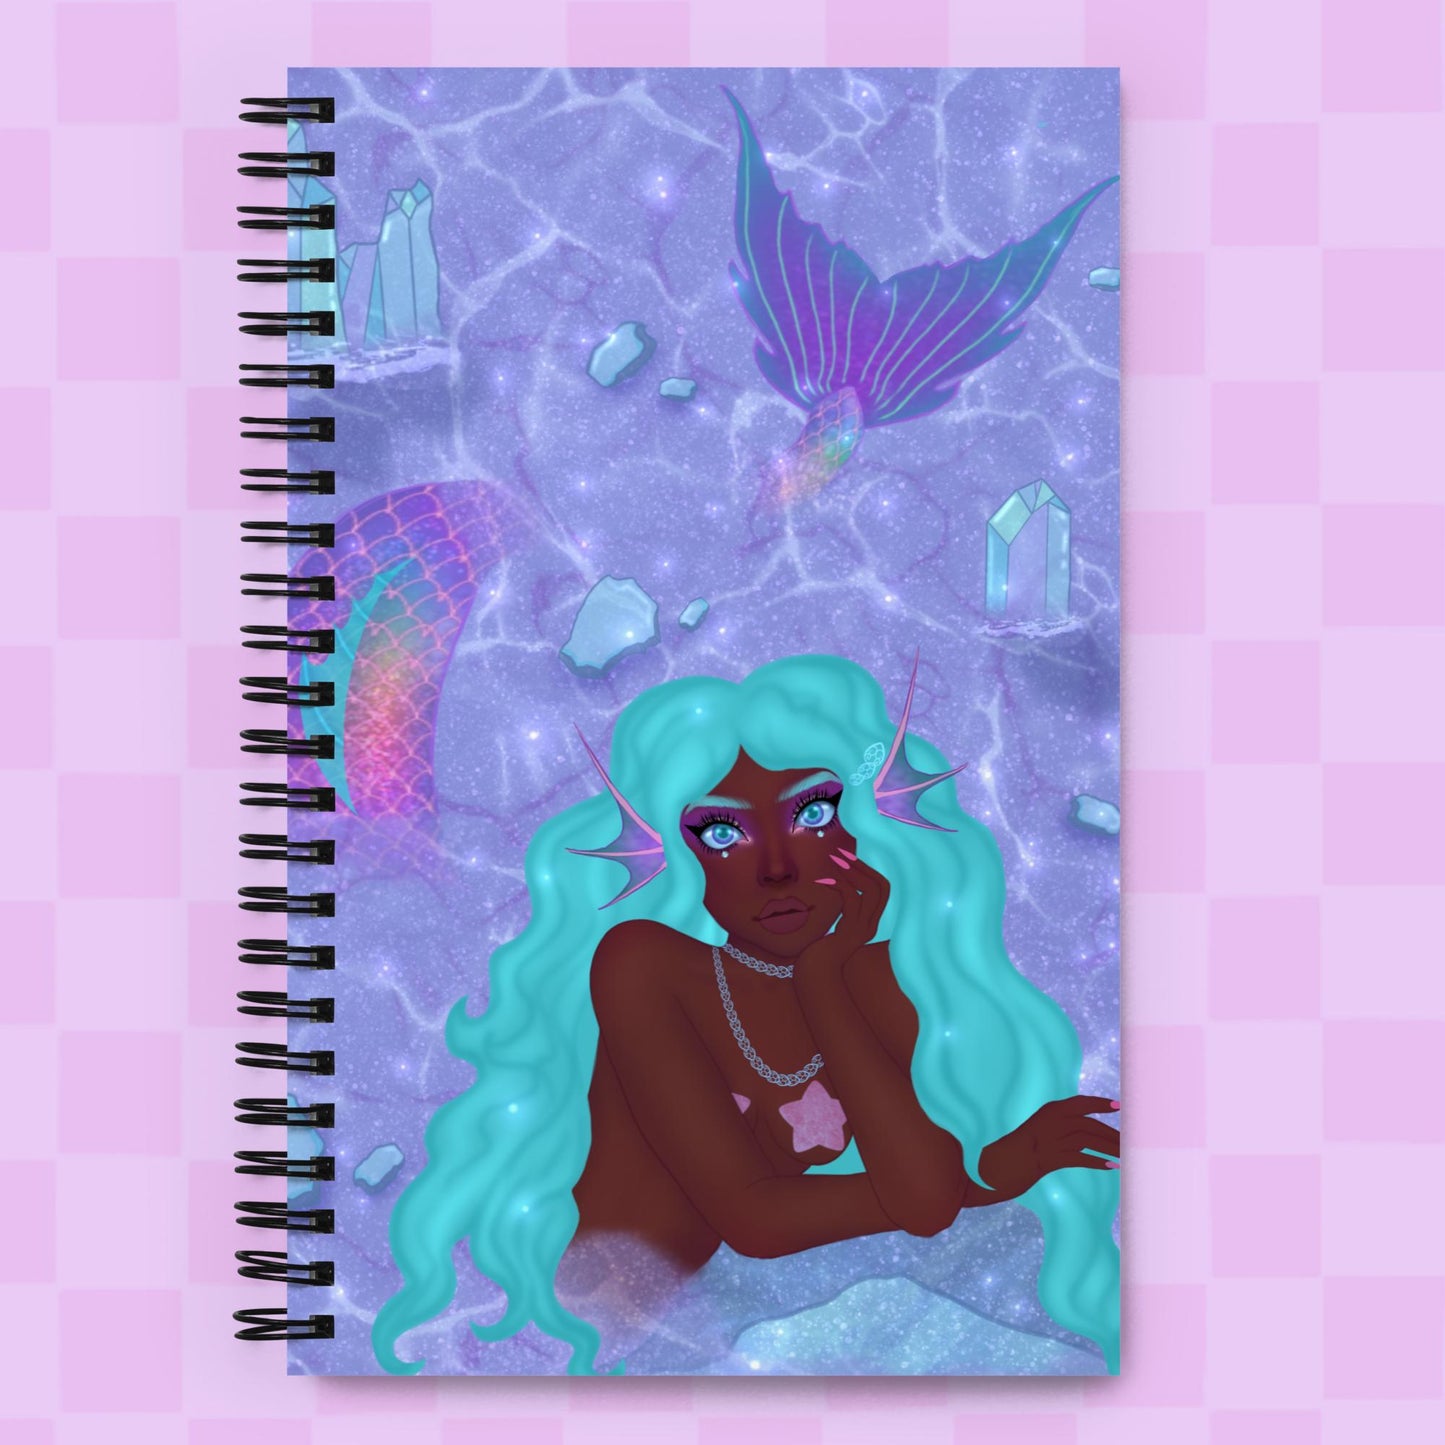 Glacier spiral notebook